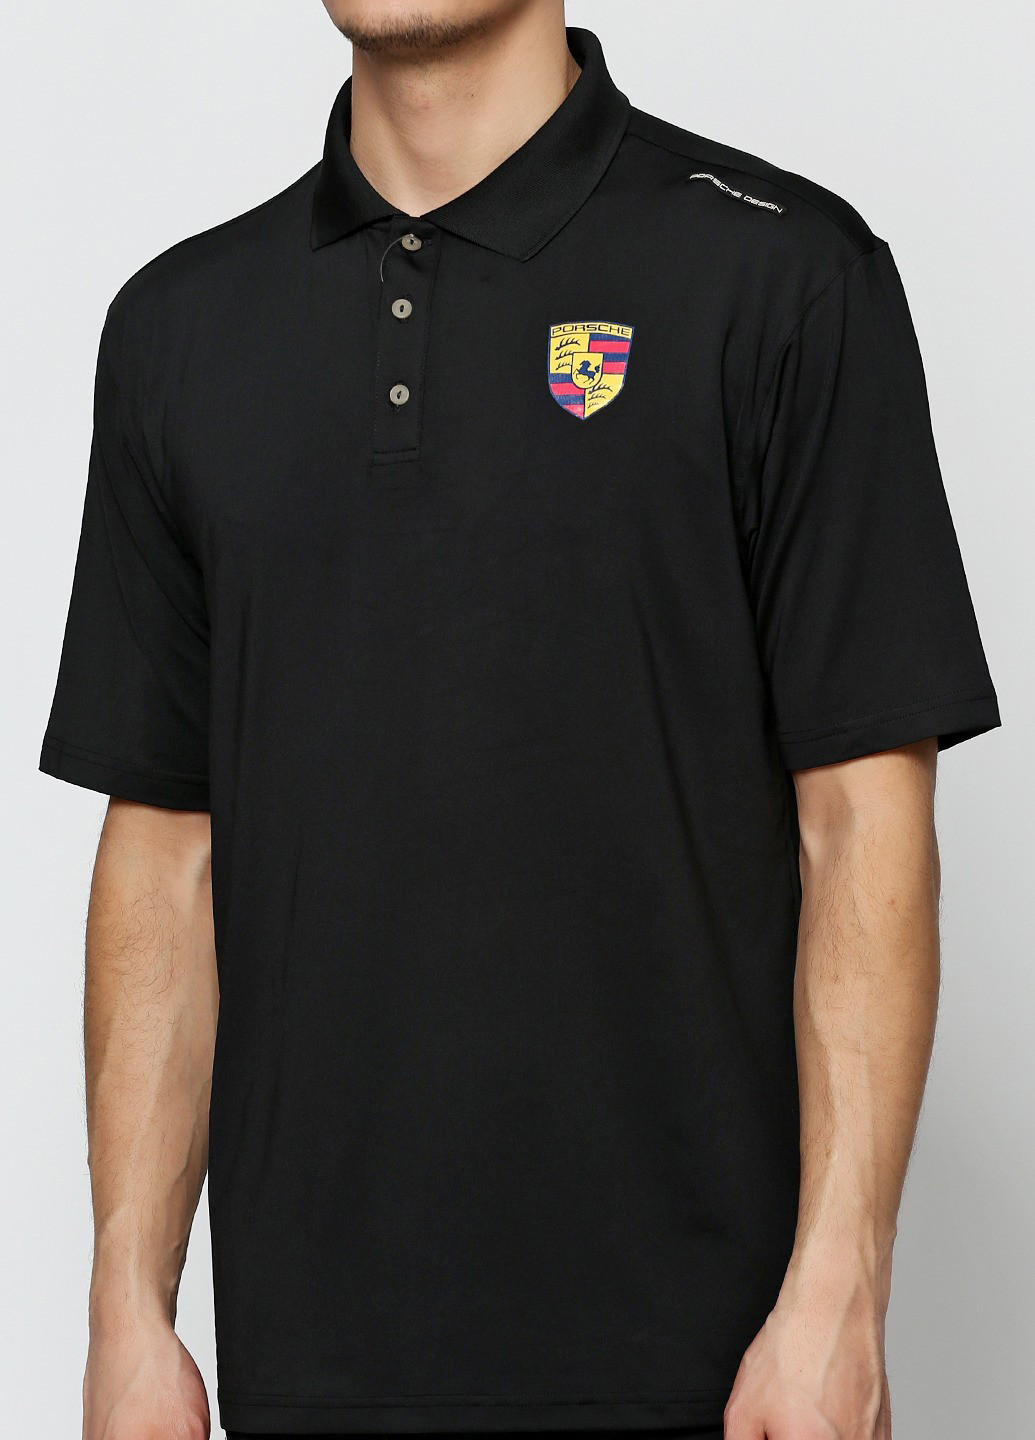 Черная футболка-поло для мужчин Adidas Porsche Design с логотипом